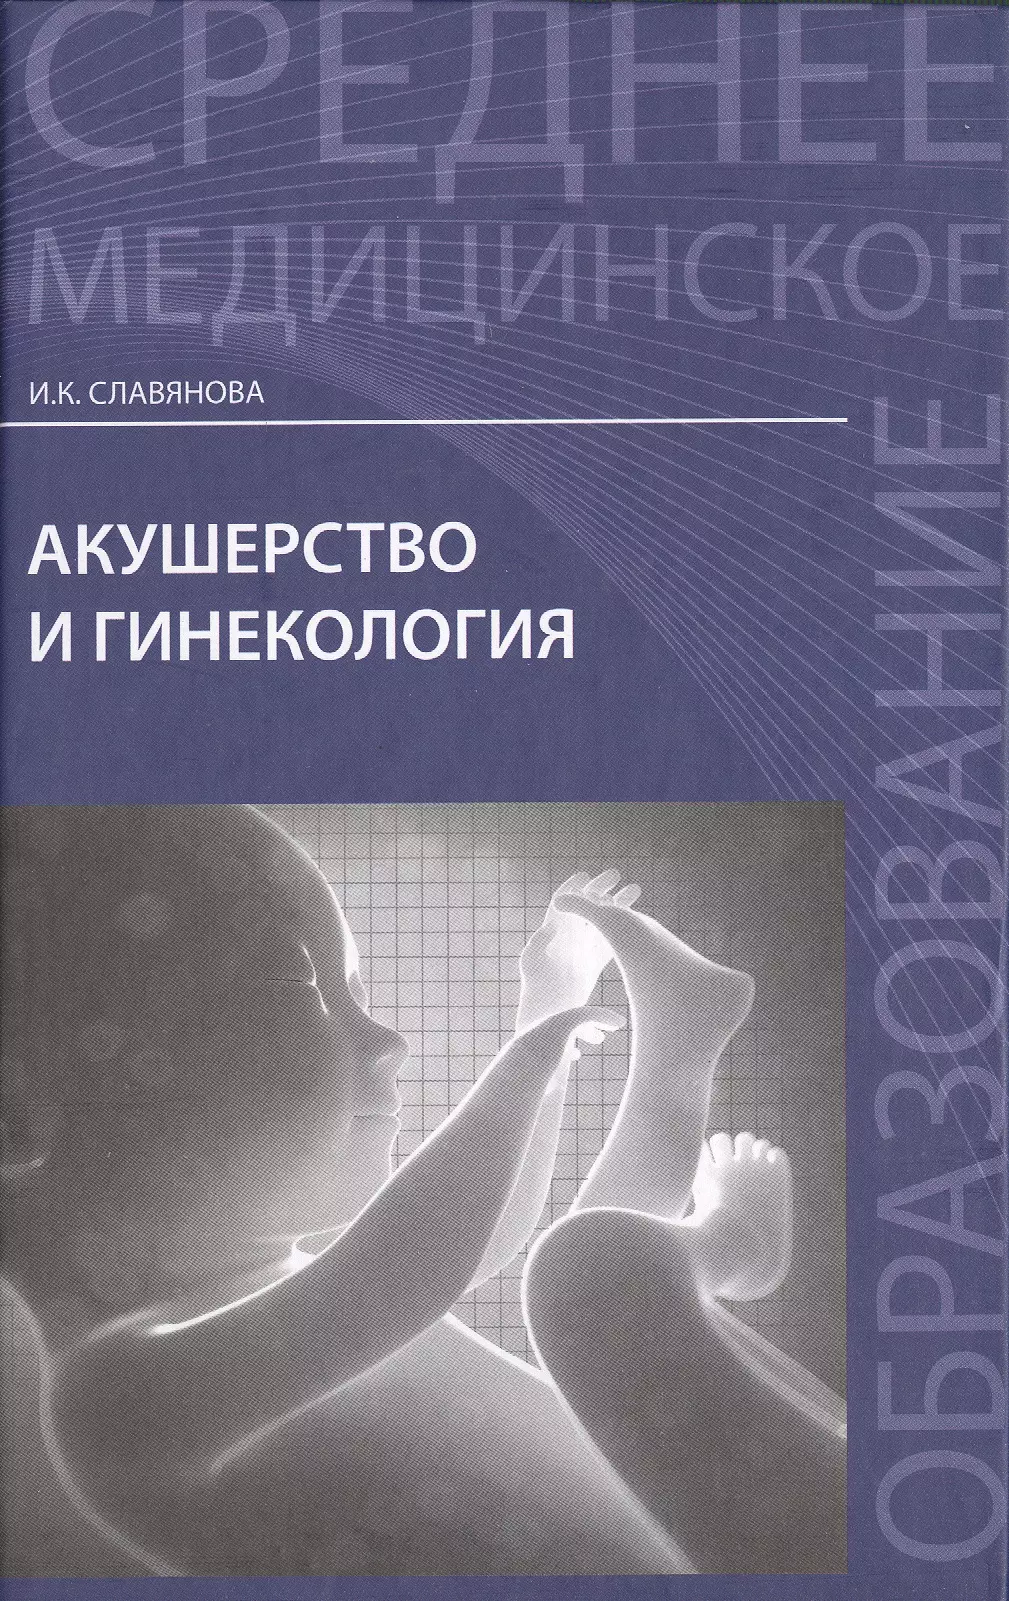 Славянова Изабелла Карповна - Акушерство и гинекология:  учебник